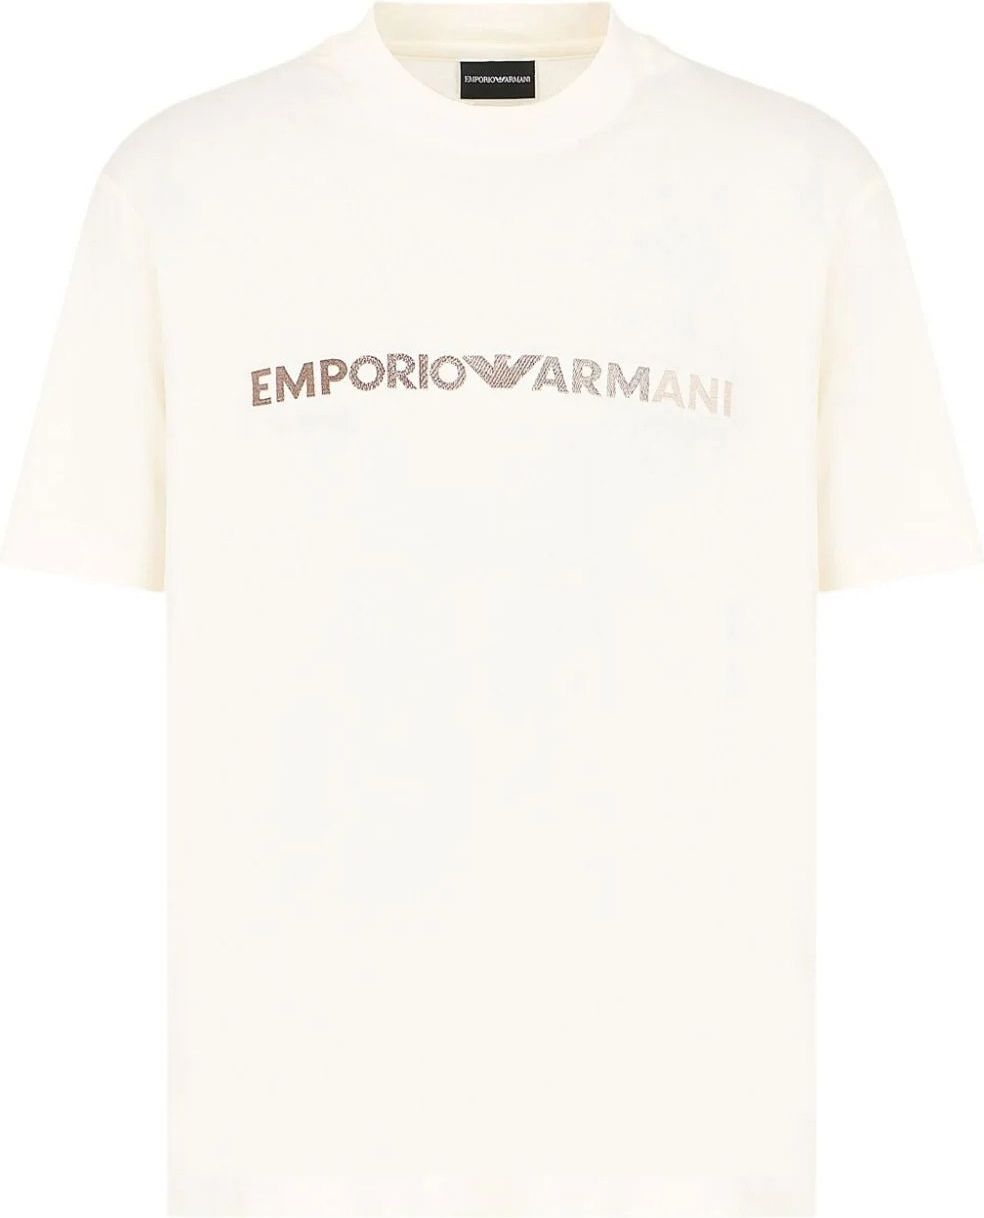 Emporio Armani t-shirt white Wit